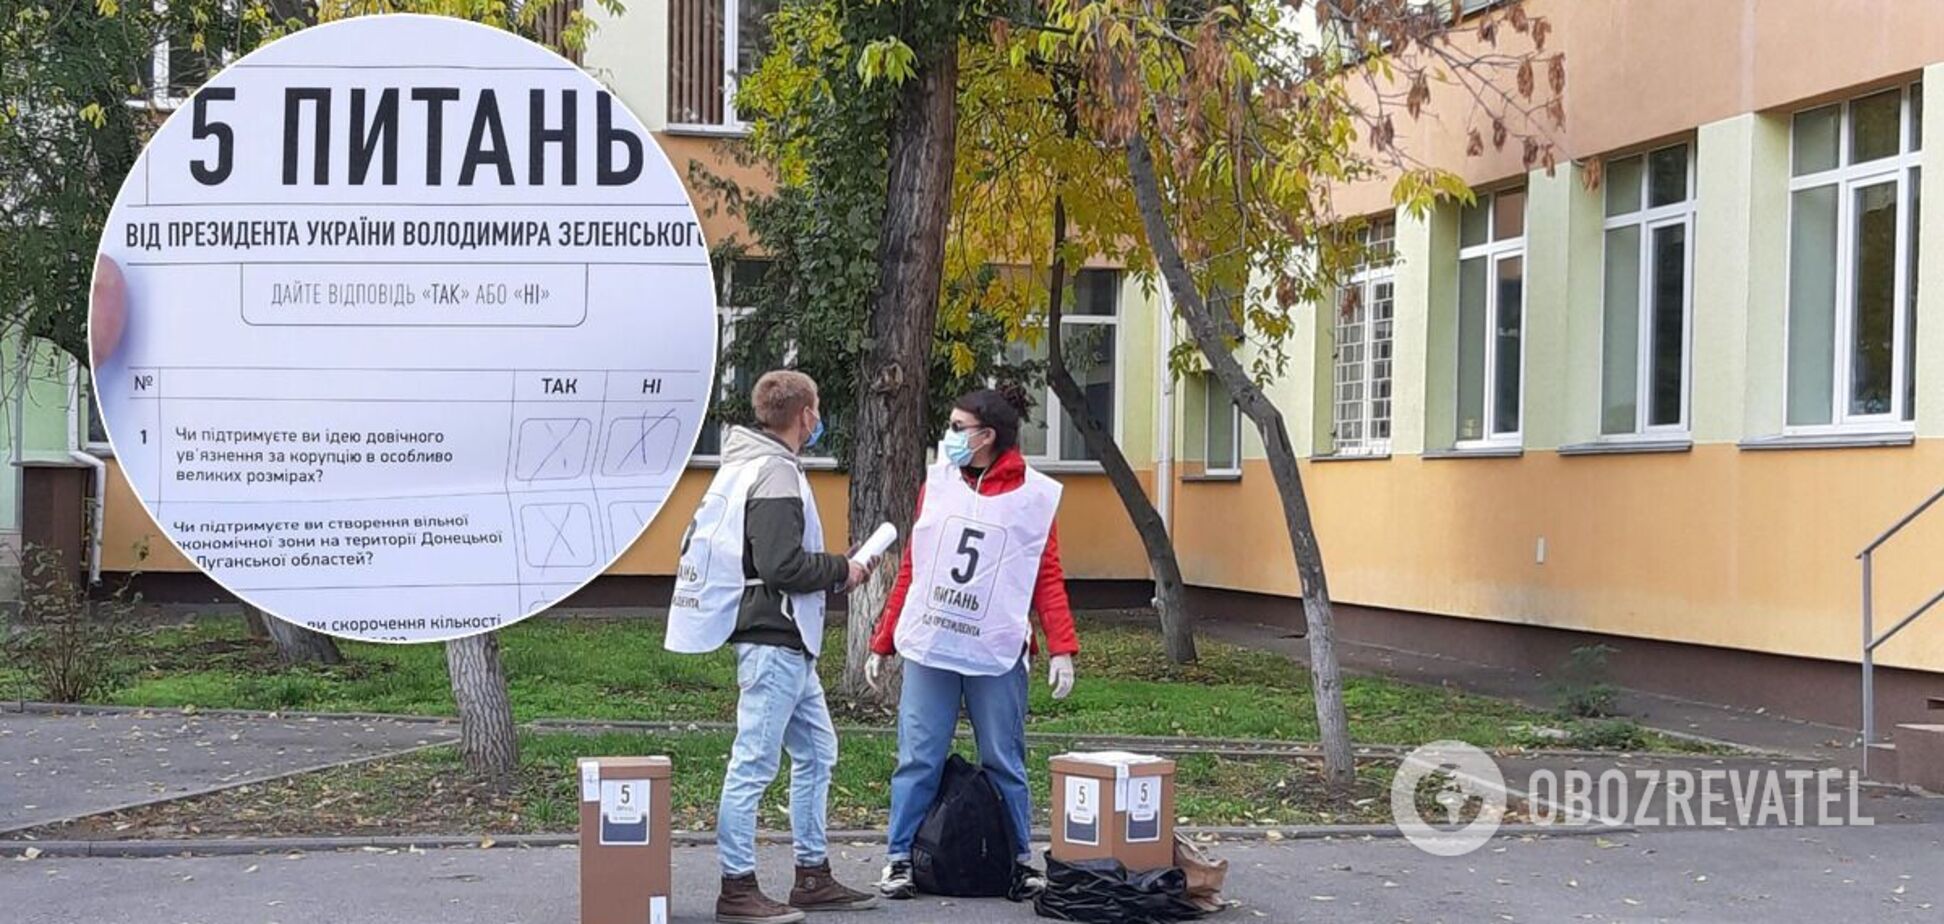 Украинцы бойкотировали, волонтеры в растерянности: как прошел опрос Зеленского